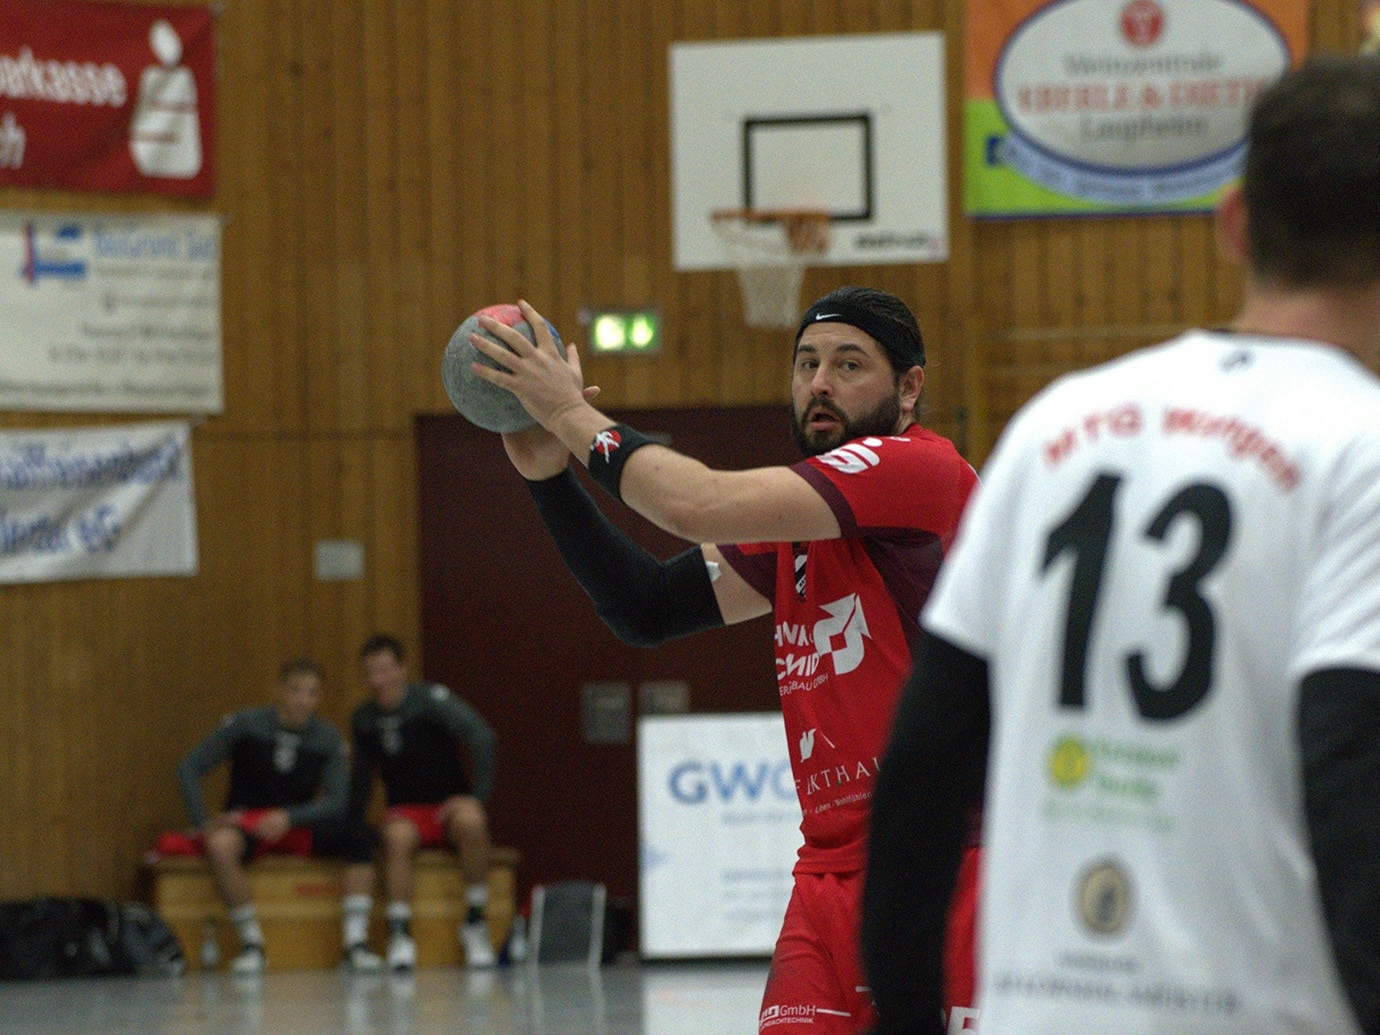 Handballspieler des HRW-Laupheim holt zum Wurf aus.